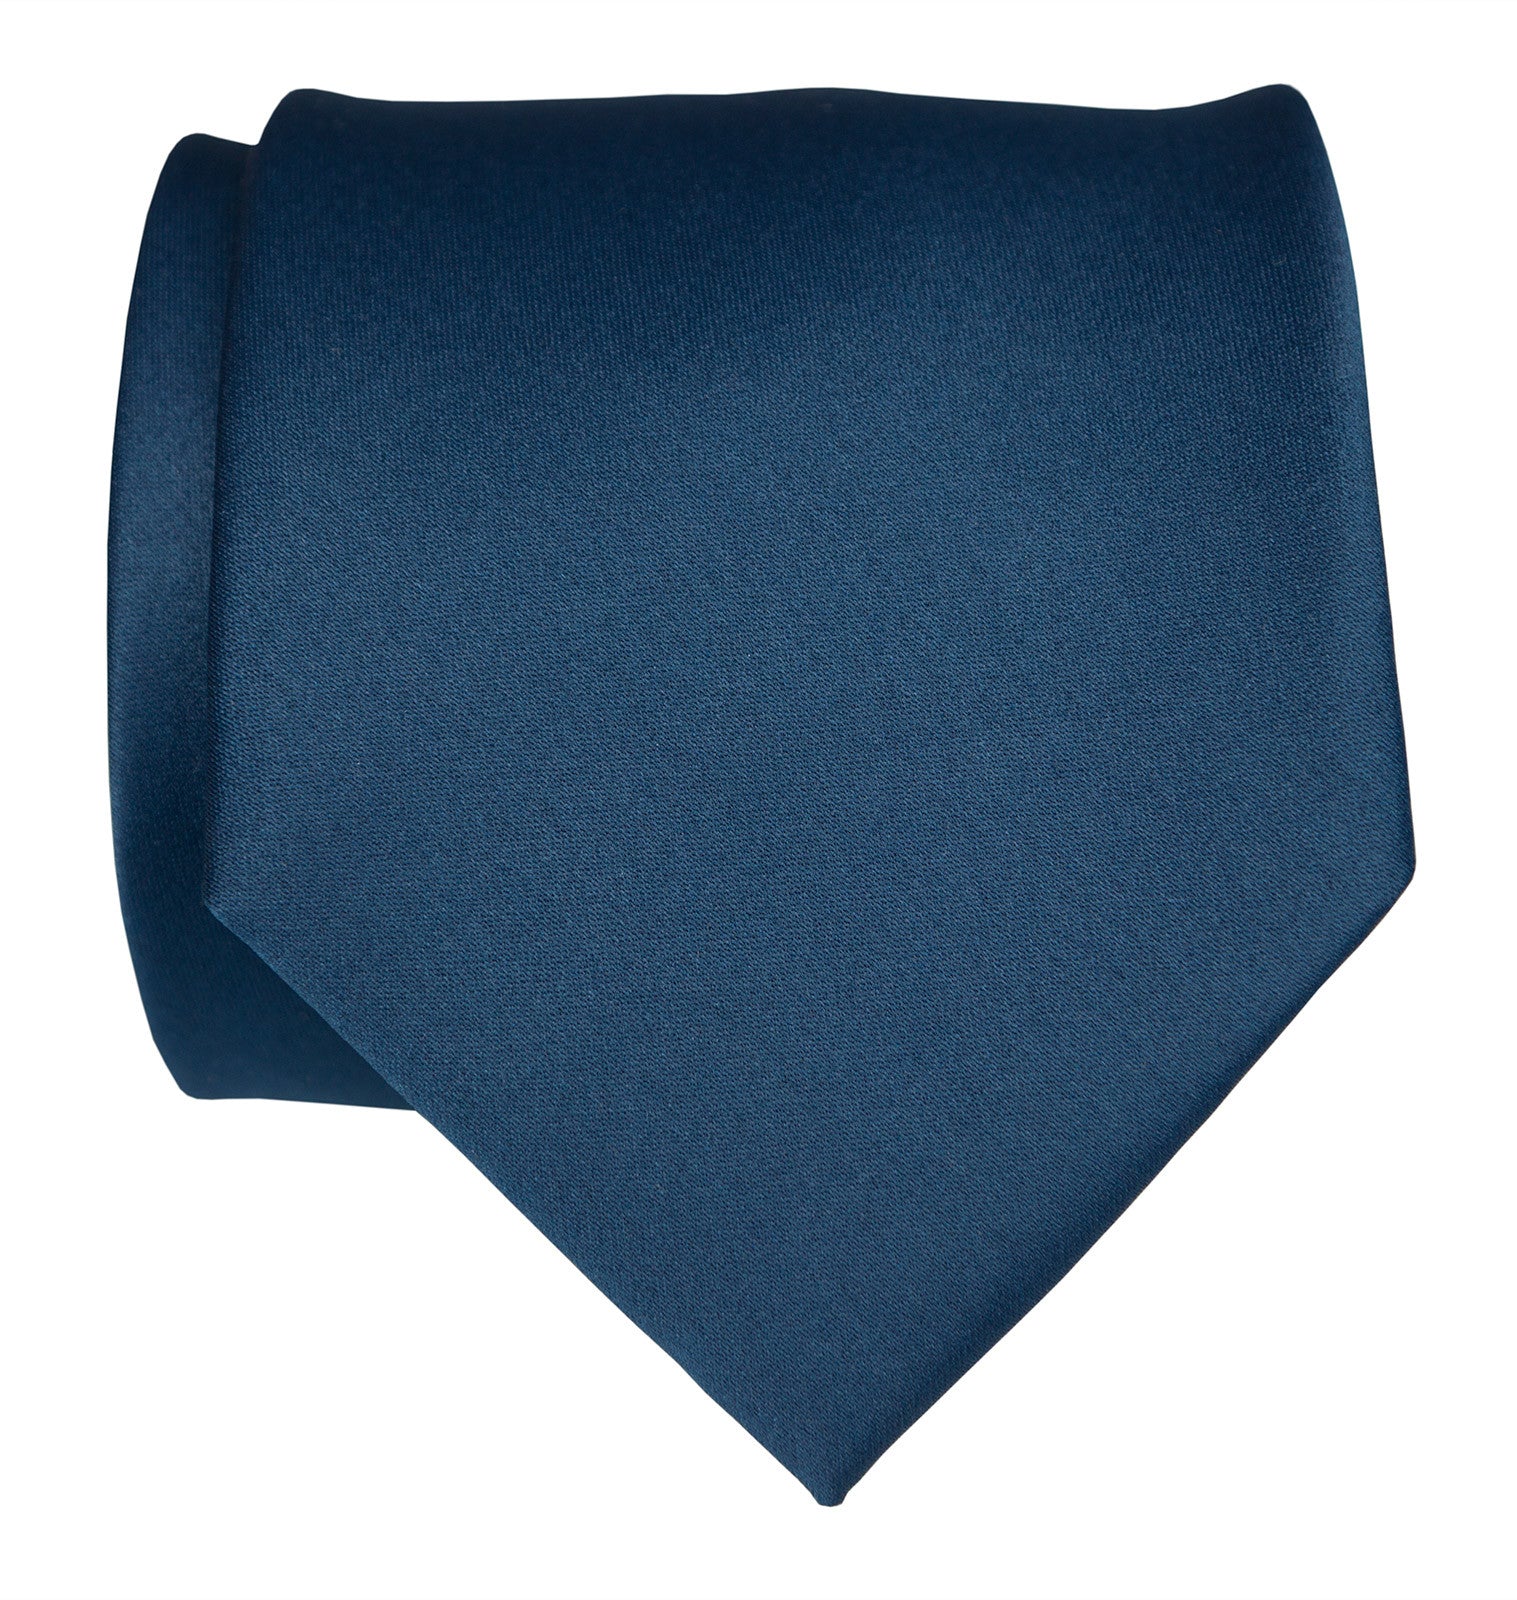 Solid Dark Royal Blue Neck Tie, Bows-N-Ties.com